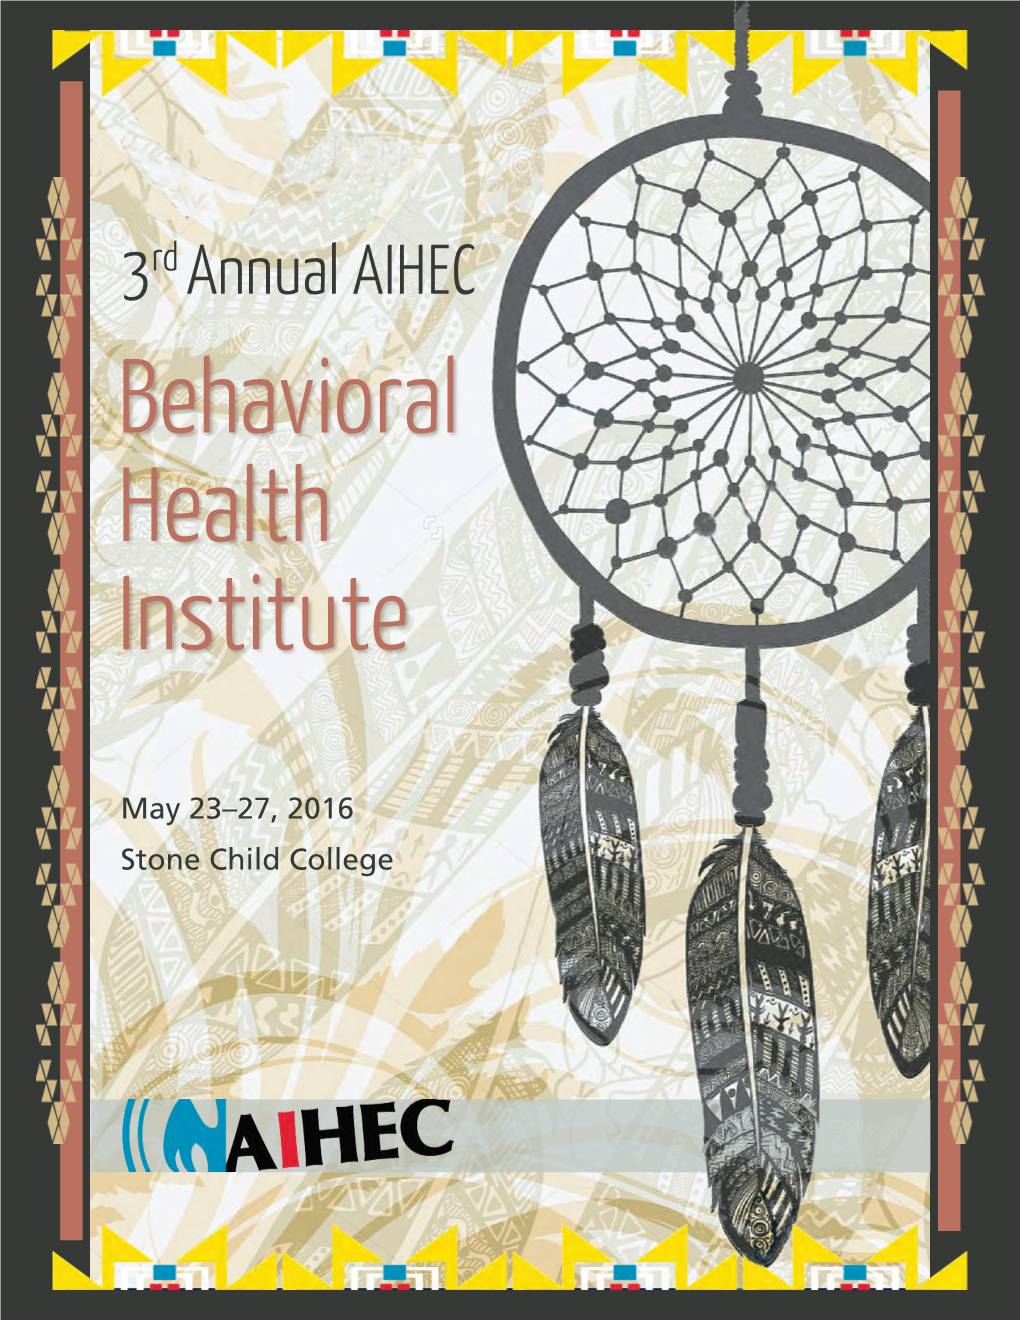 3 Rd Annual AIHEC 2016 Behavioral Health Institute